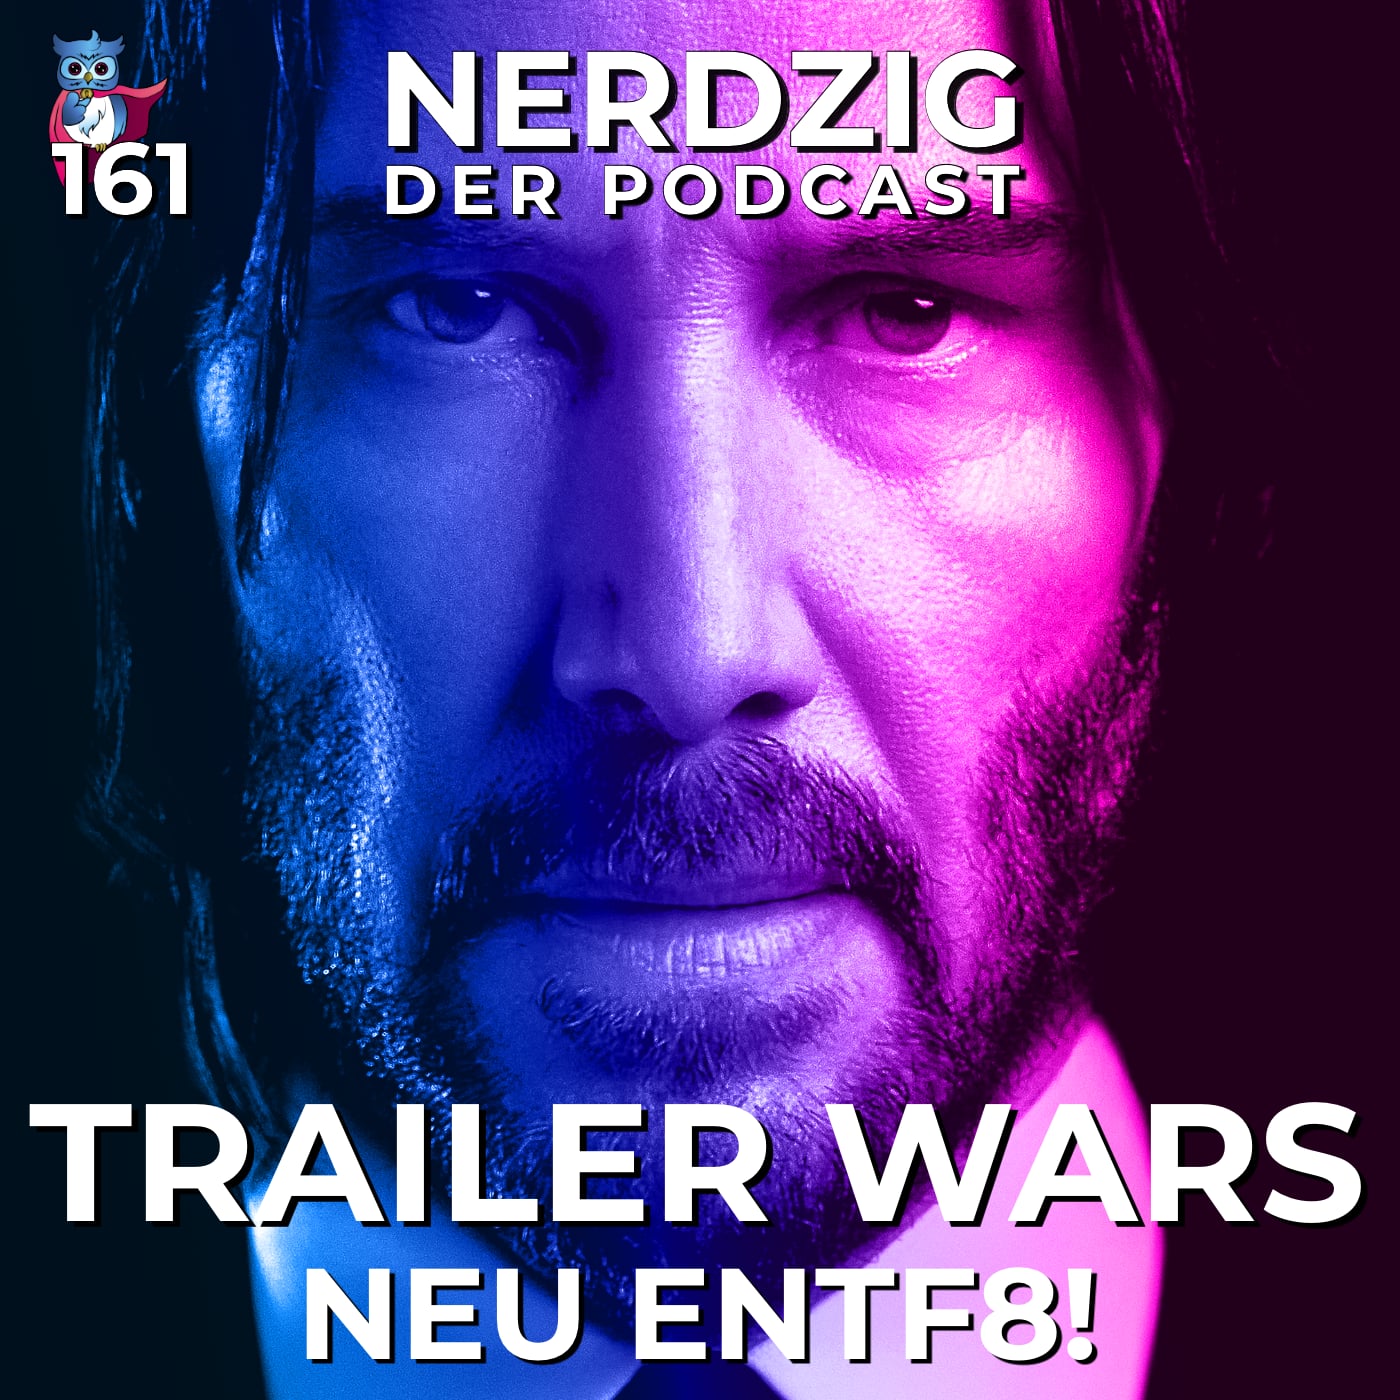 Nerdzig - Der Podcast #161 – Trailer Wars – Neu Entf8!